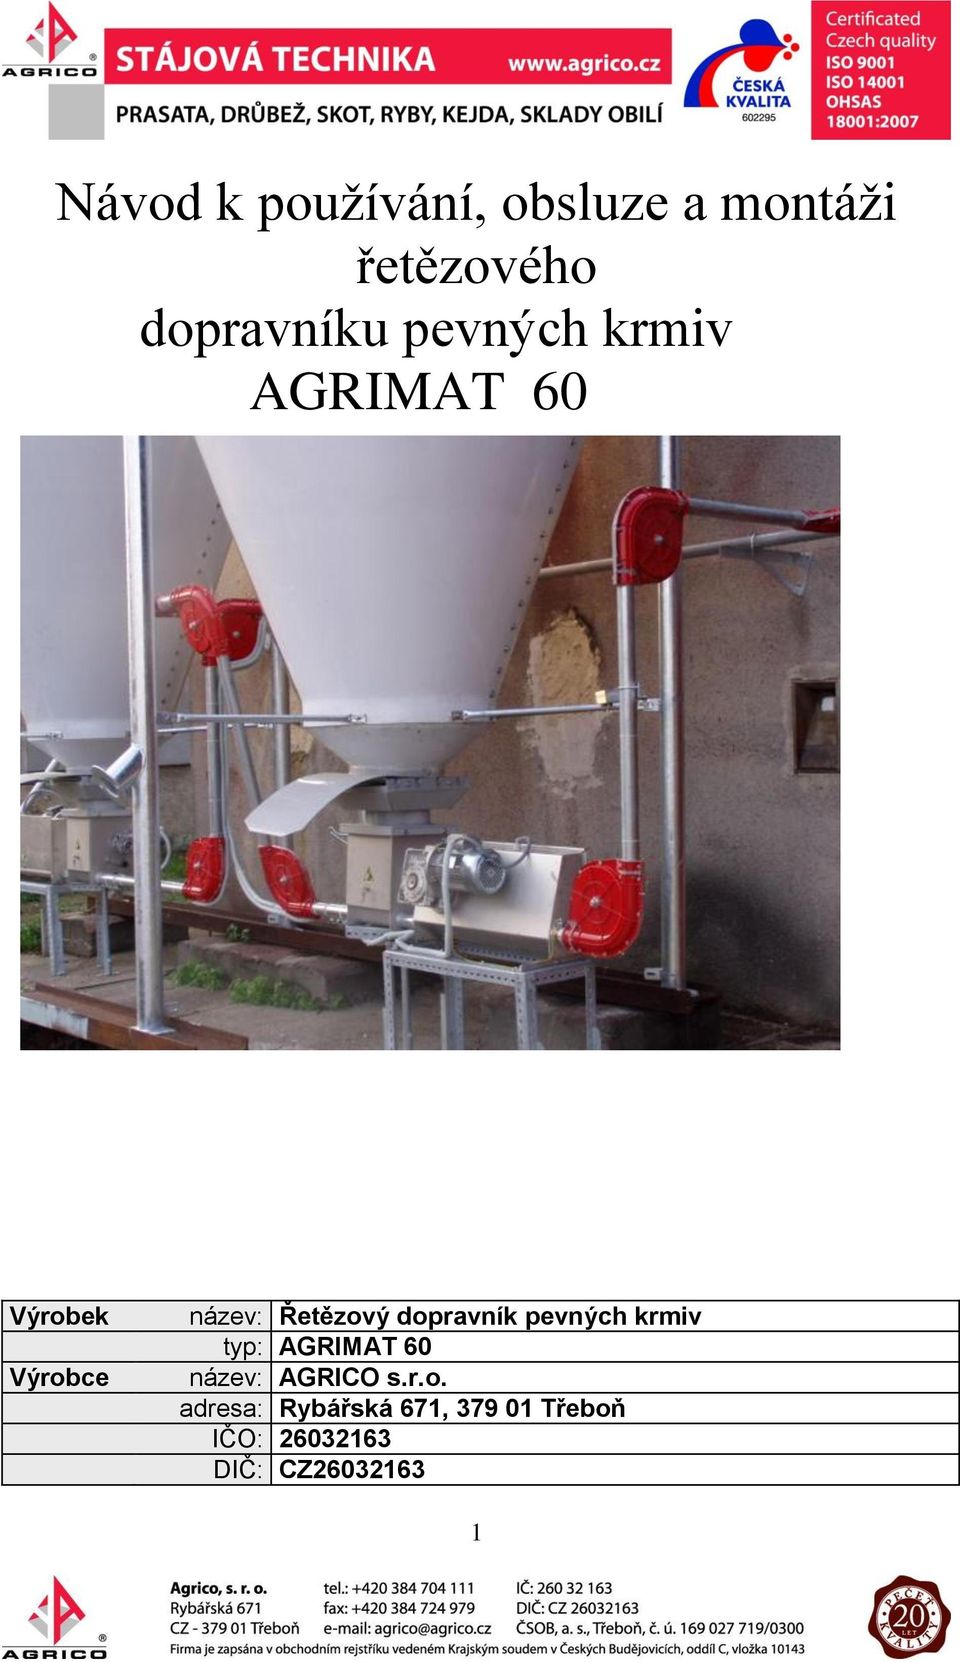 dopravník pevných krmiv typ: AGRIMAT 60 název: AGRICO s.r.o.